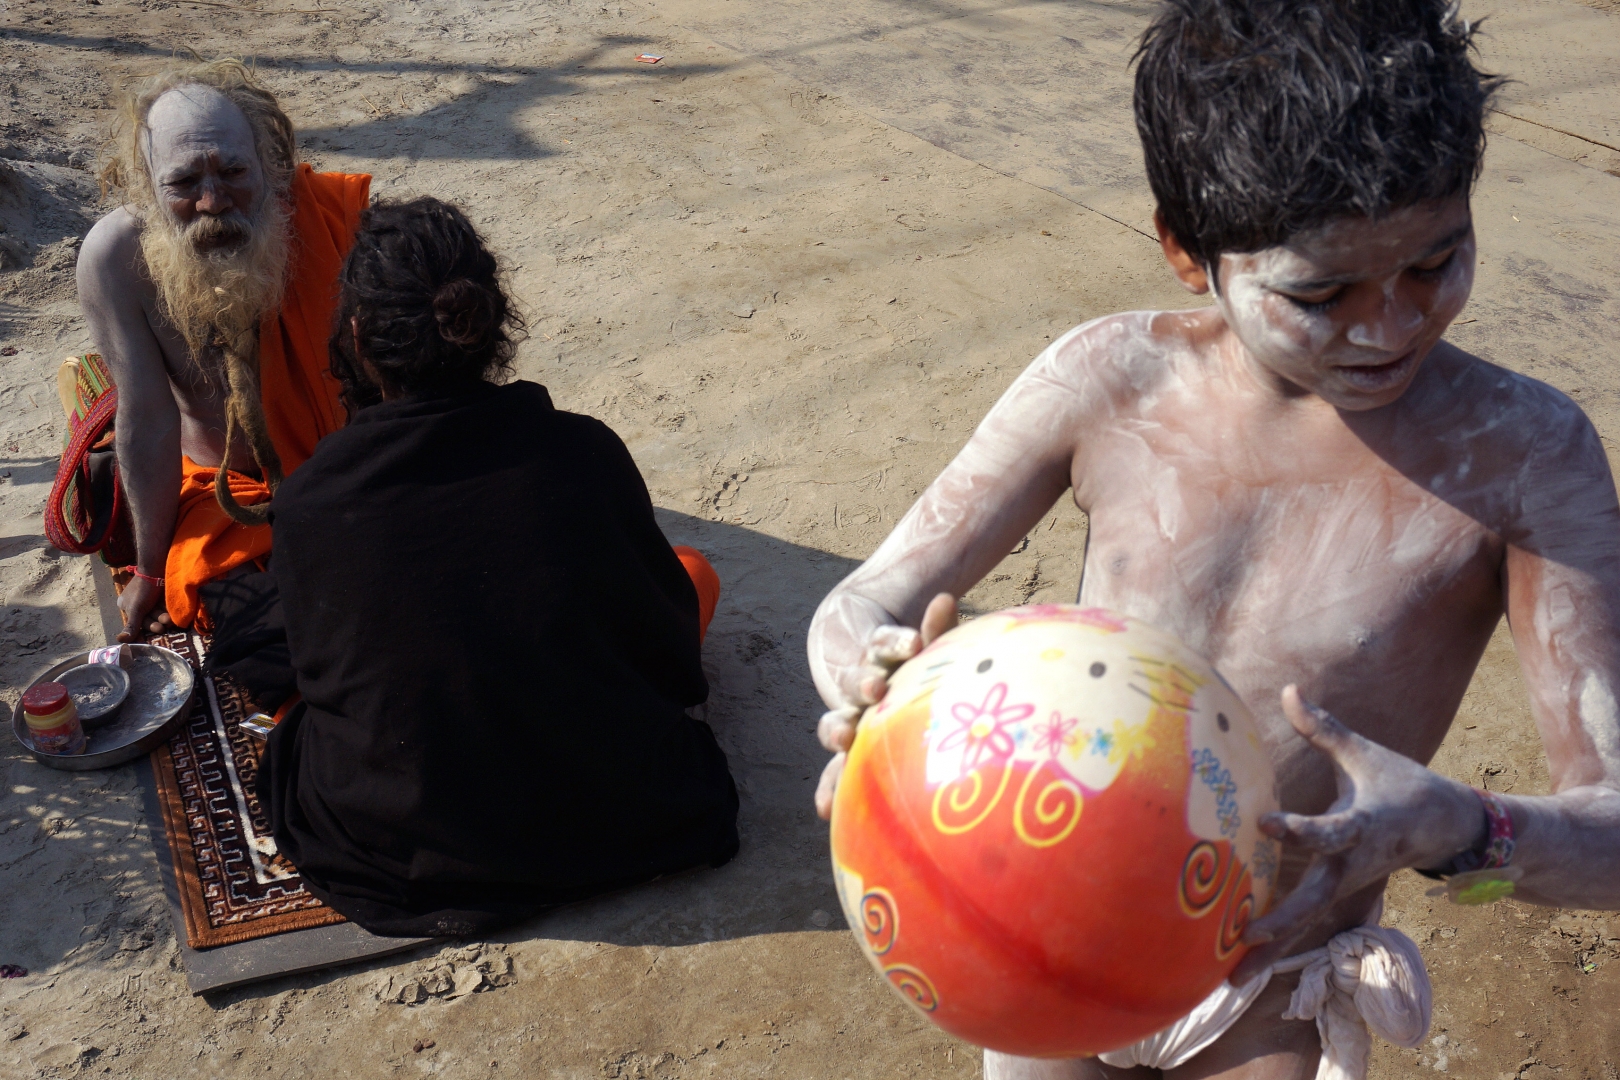 Через несколько дней мальчик получит посвящение в традицию Нага Баба, после чего будет жить и учиться у садху